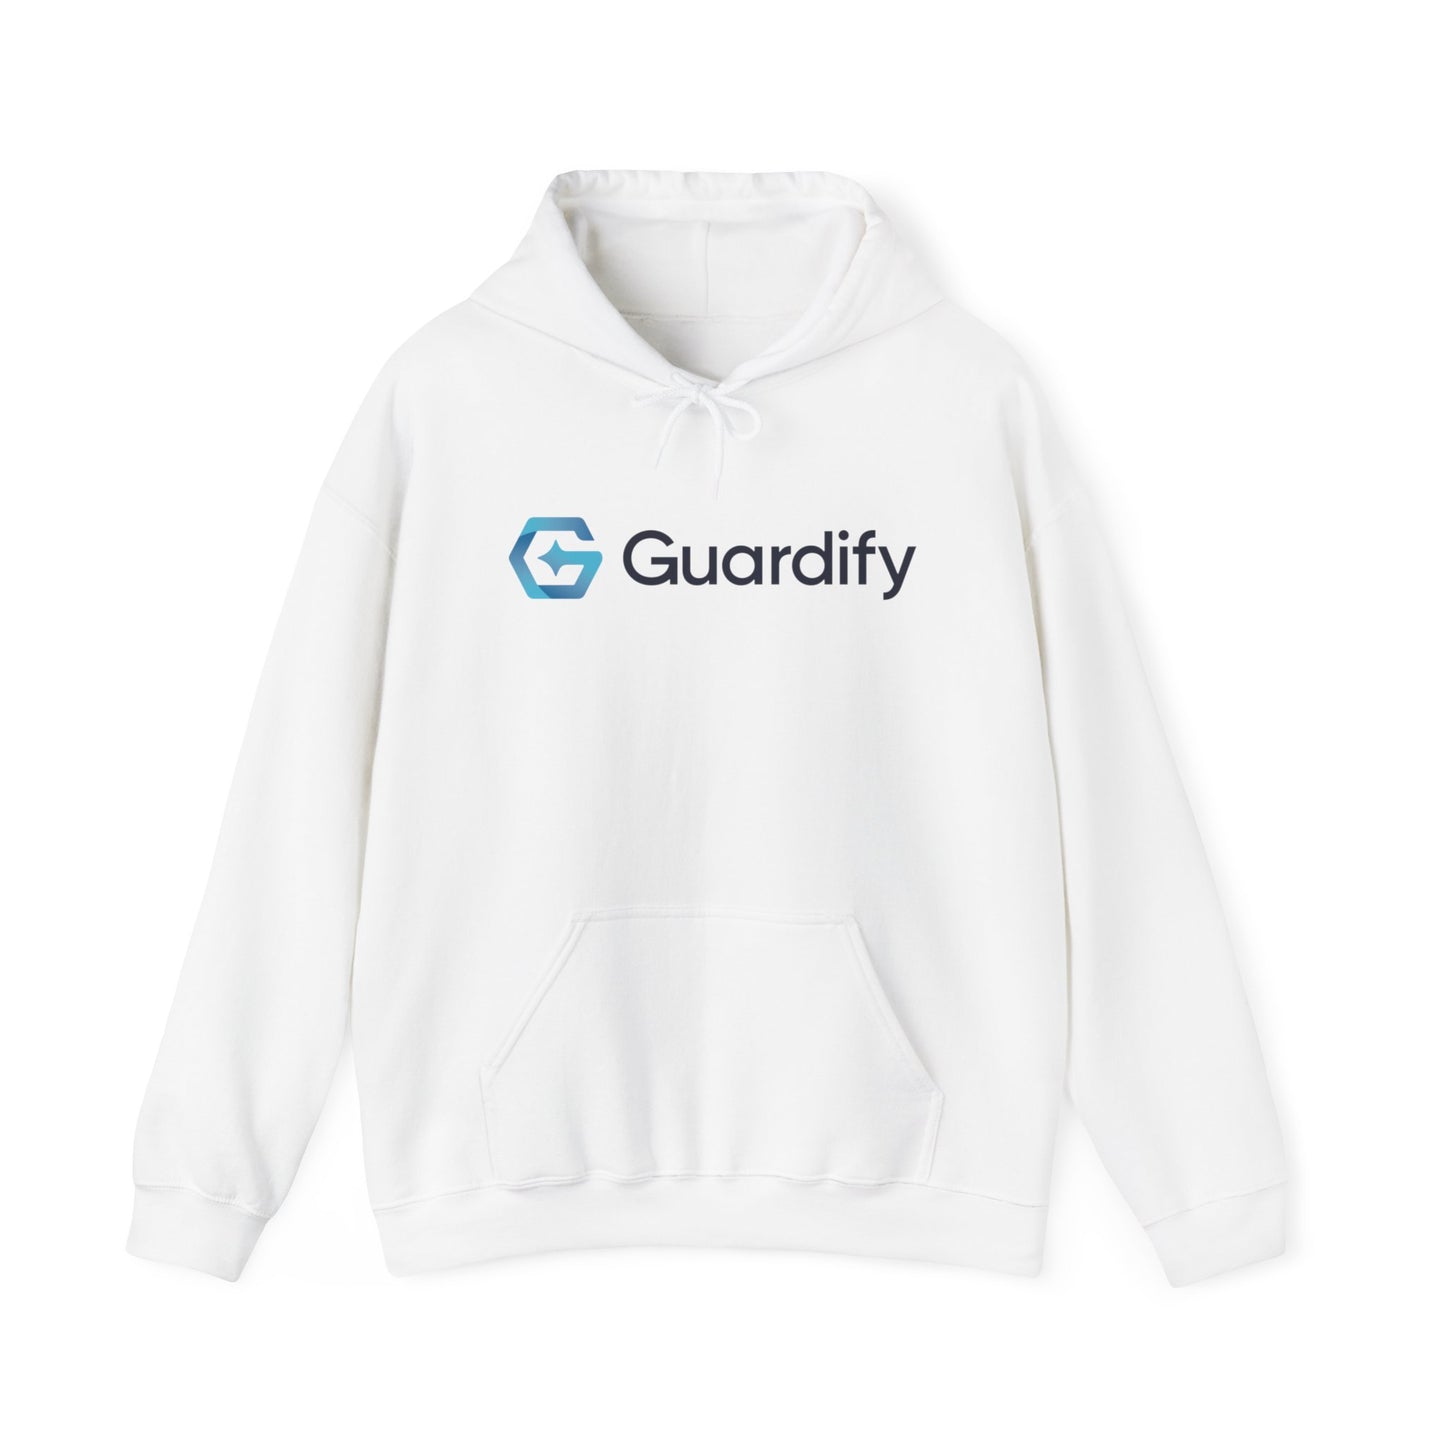 Guardify Hooded Sweatshirt